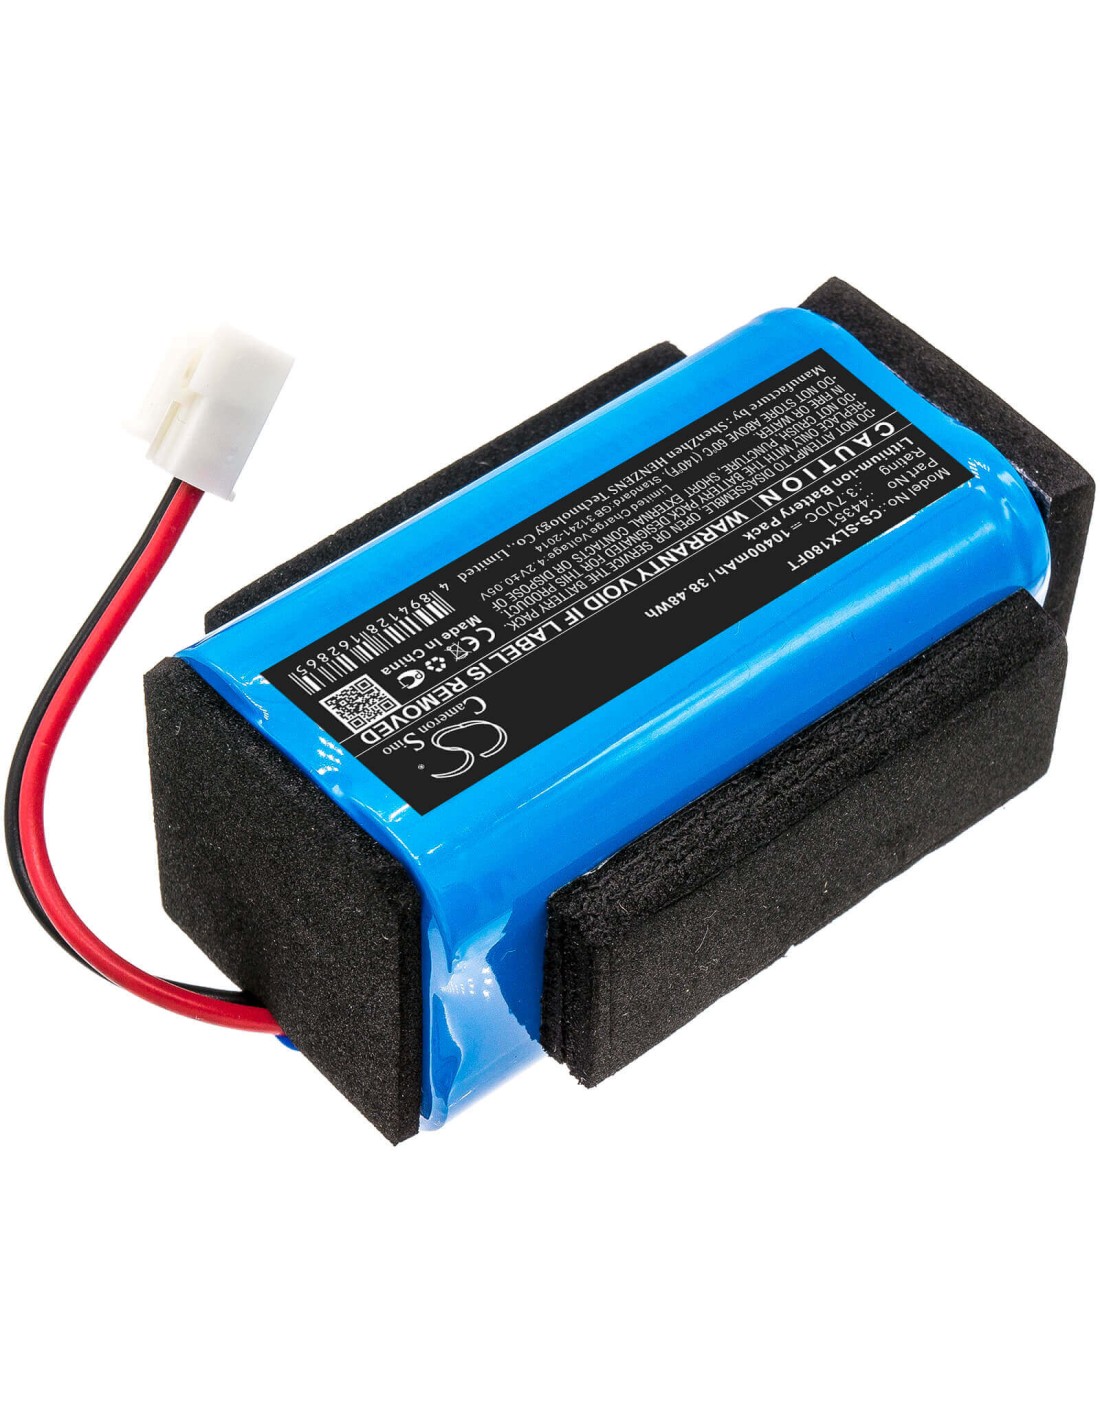 Battery for Streamlight, Vulcan, 180 3.7V, 10400mAh - 38.48Wh